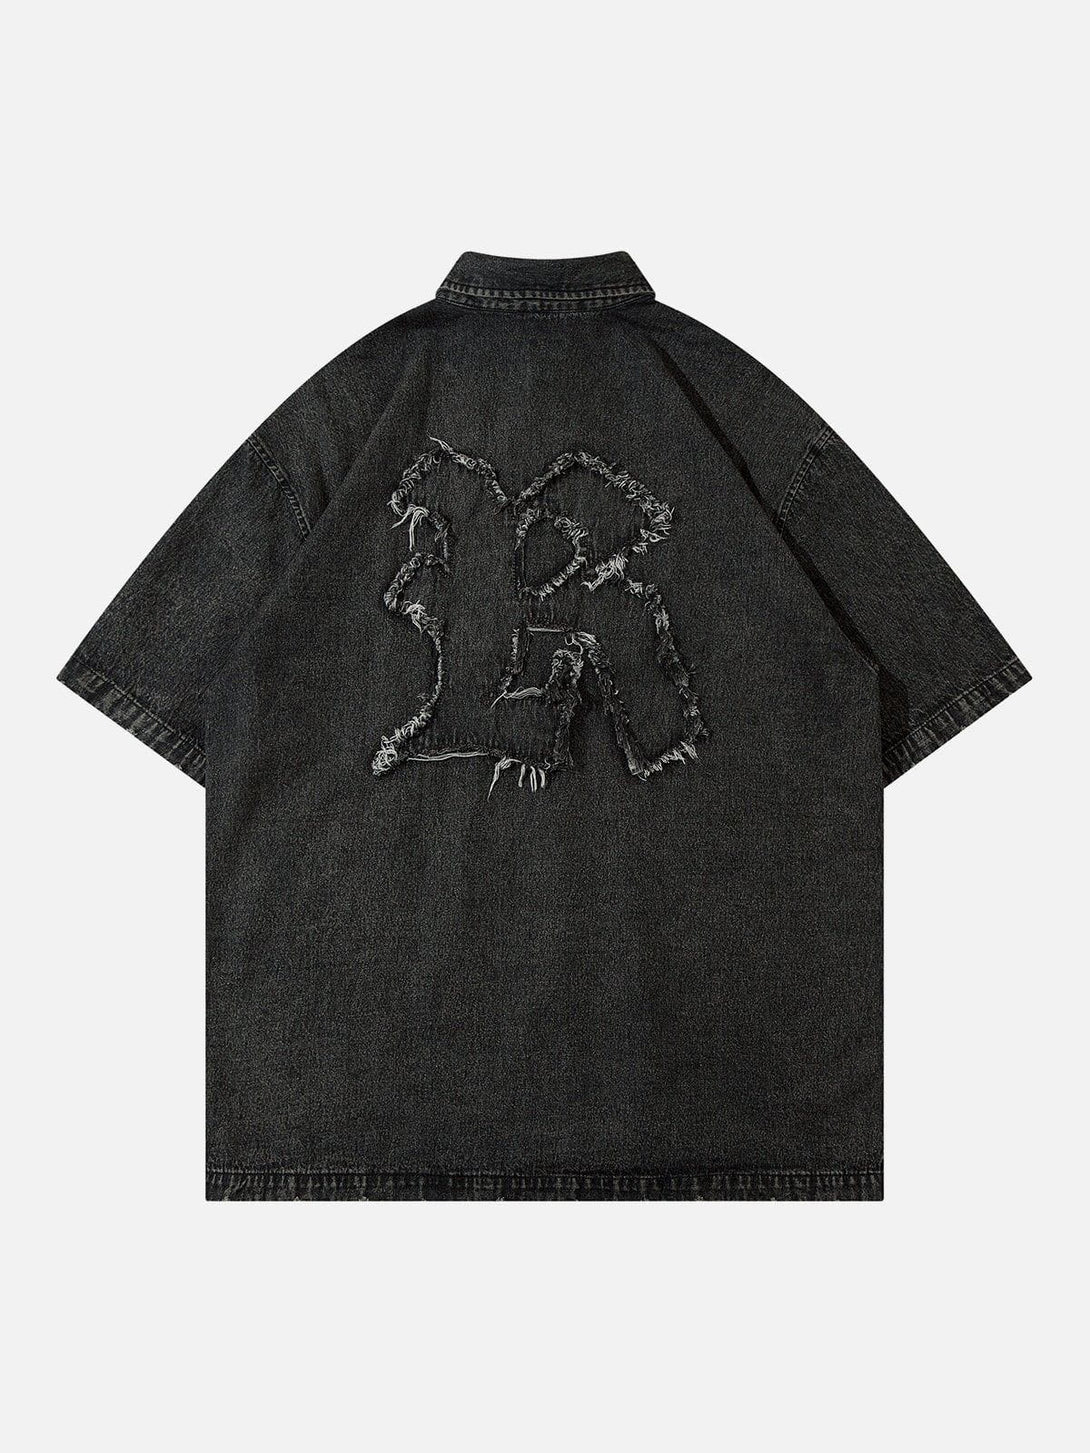 AlanBalen® - Embroidery Denim Short Sleeve Shirts AlanBalen